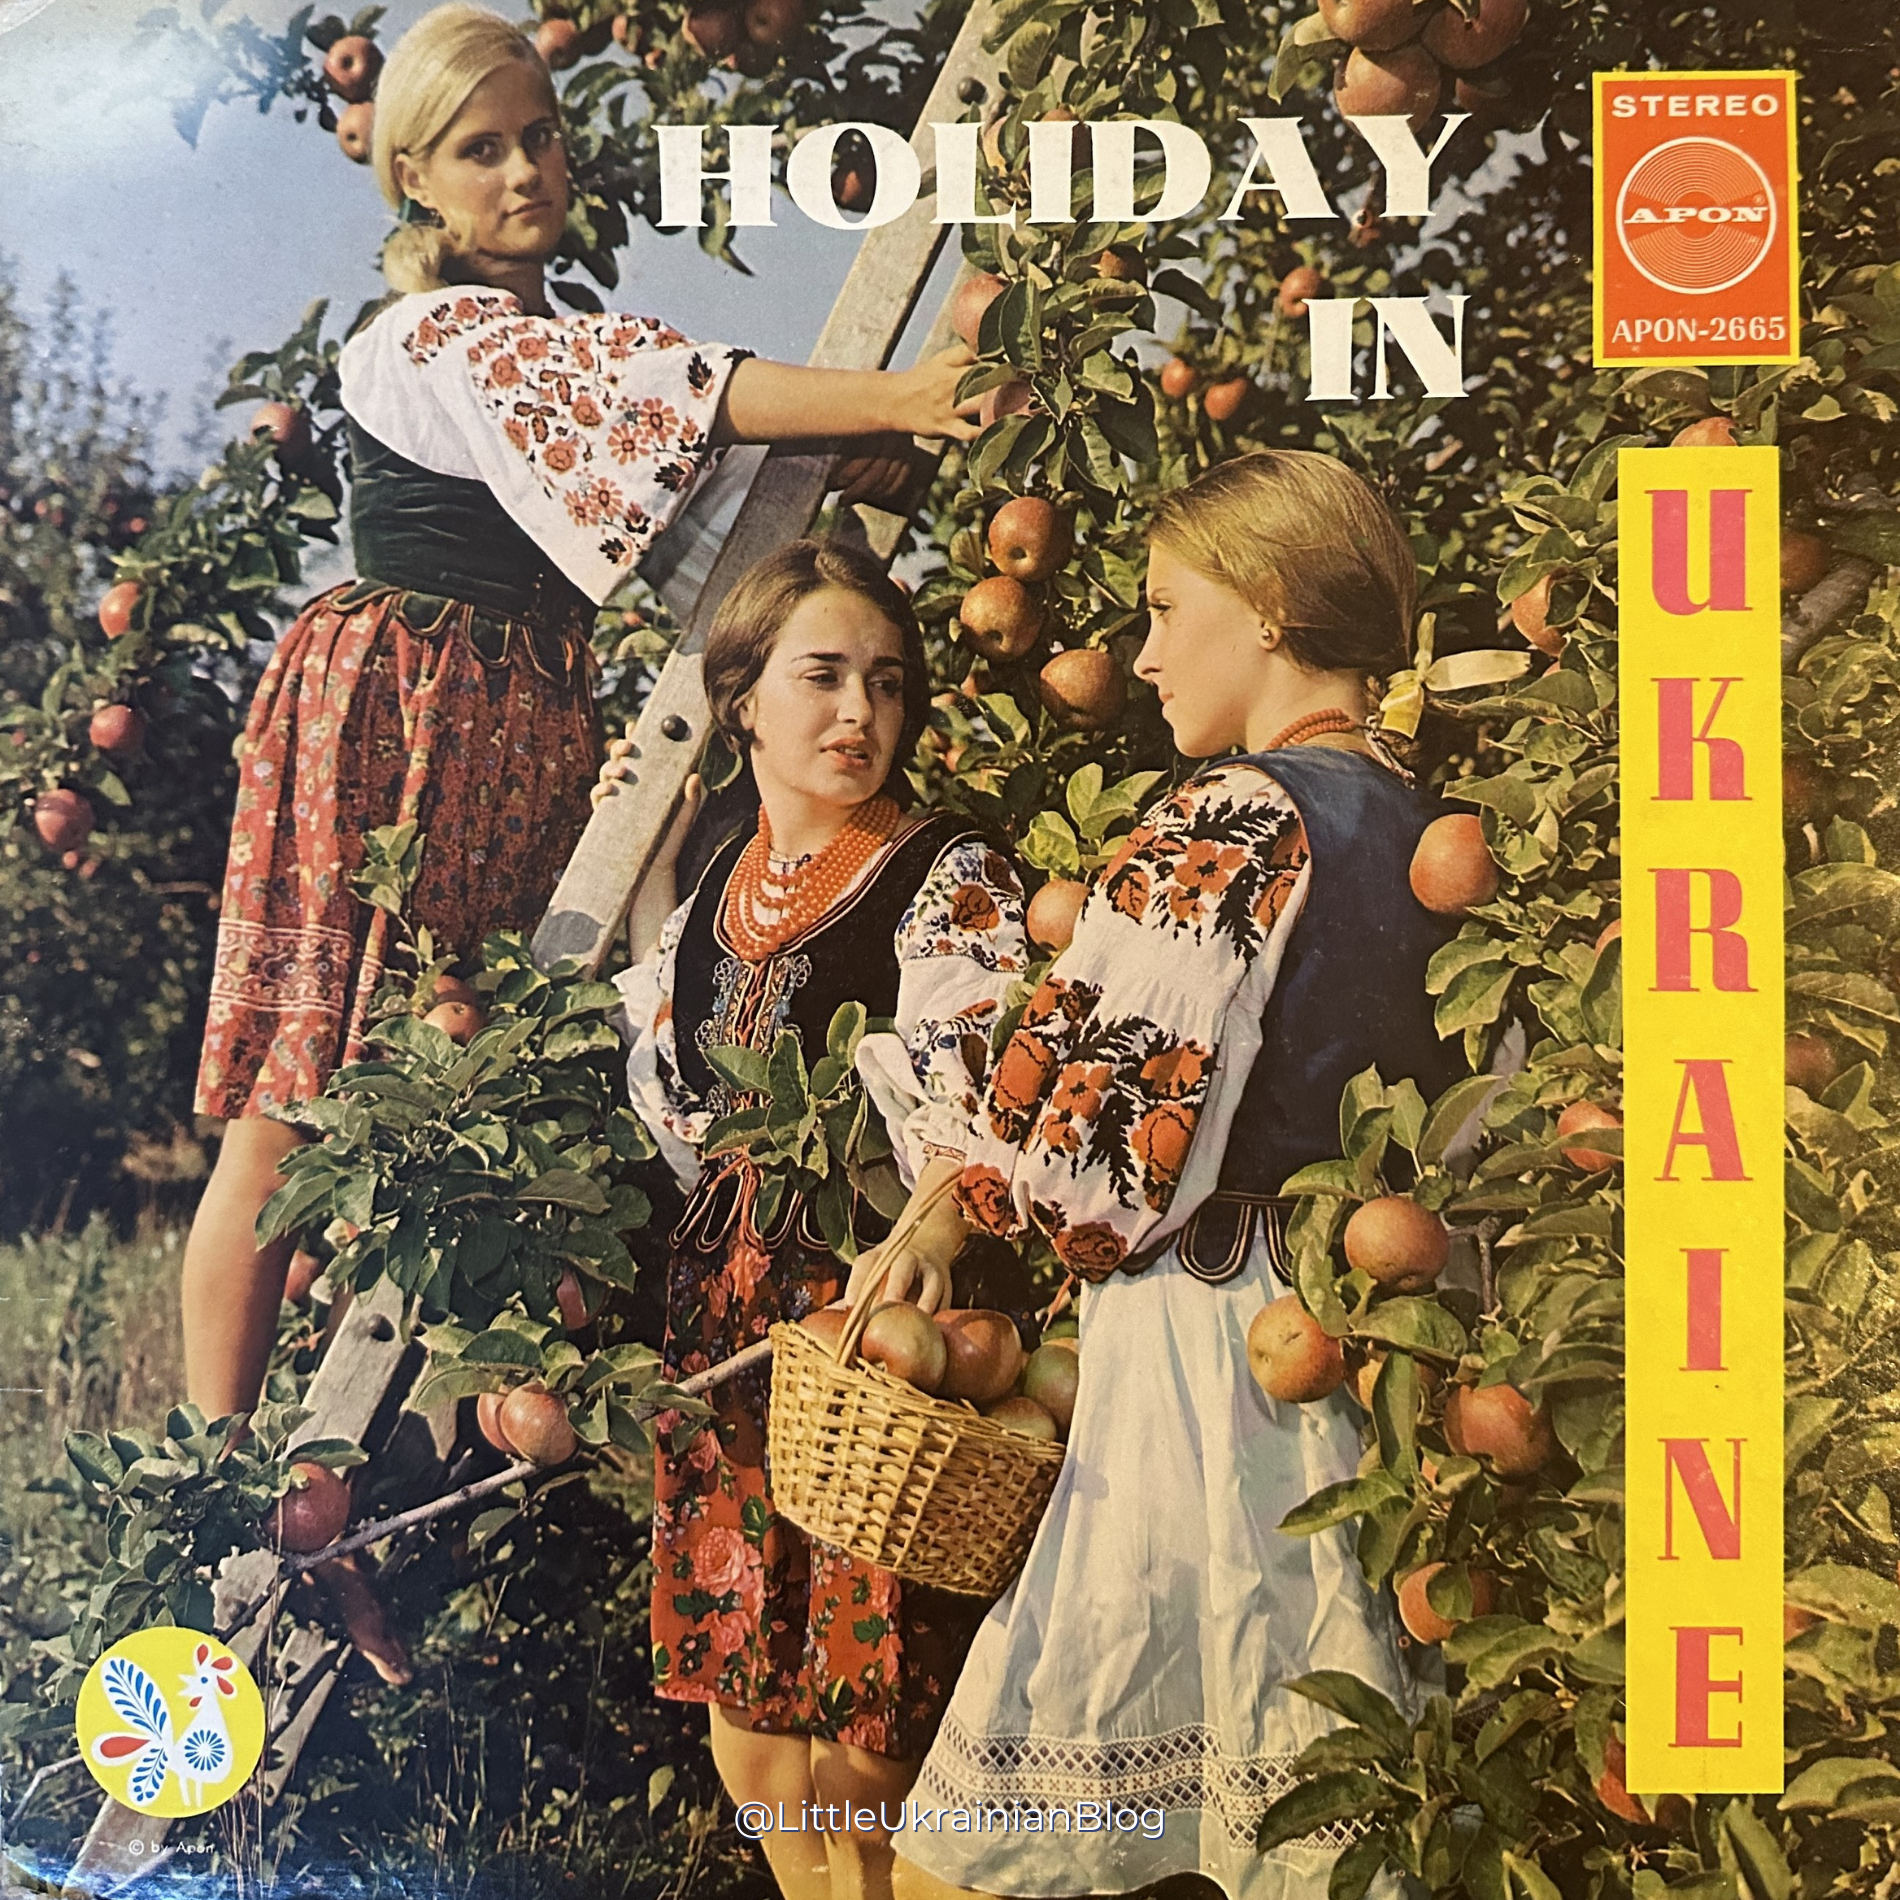 Old Ukrainian Vinyl, Ukrainian LP, Ukrainian Folk Music, Ukrainian Music, Holiday in Ukraine vinyl, Apon 2665